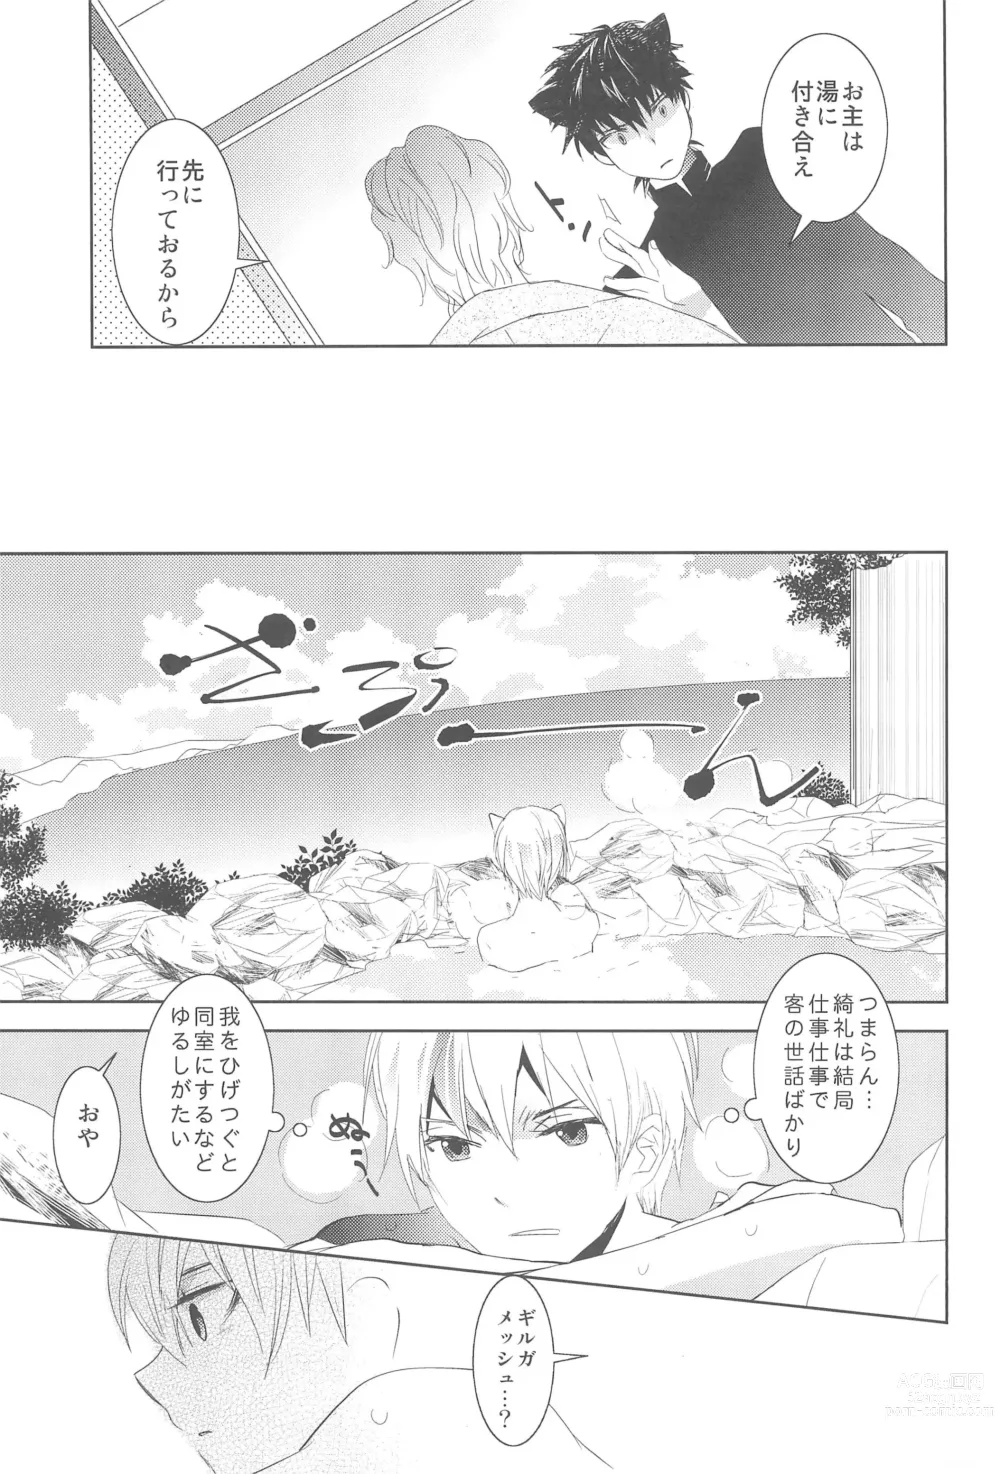 Page 13 of doujinshi Omise no Neko 3.5